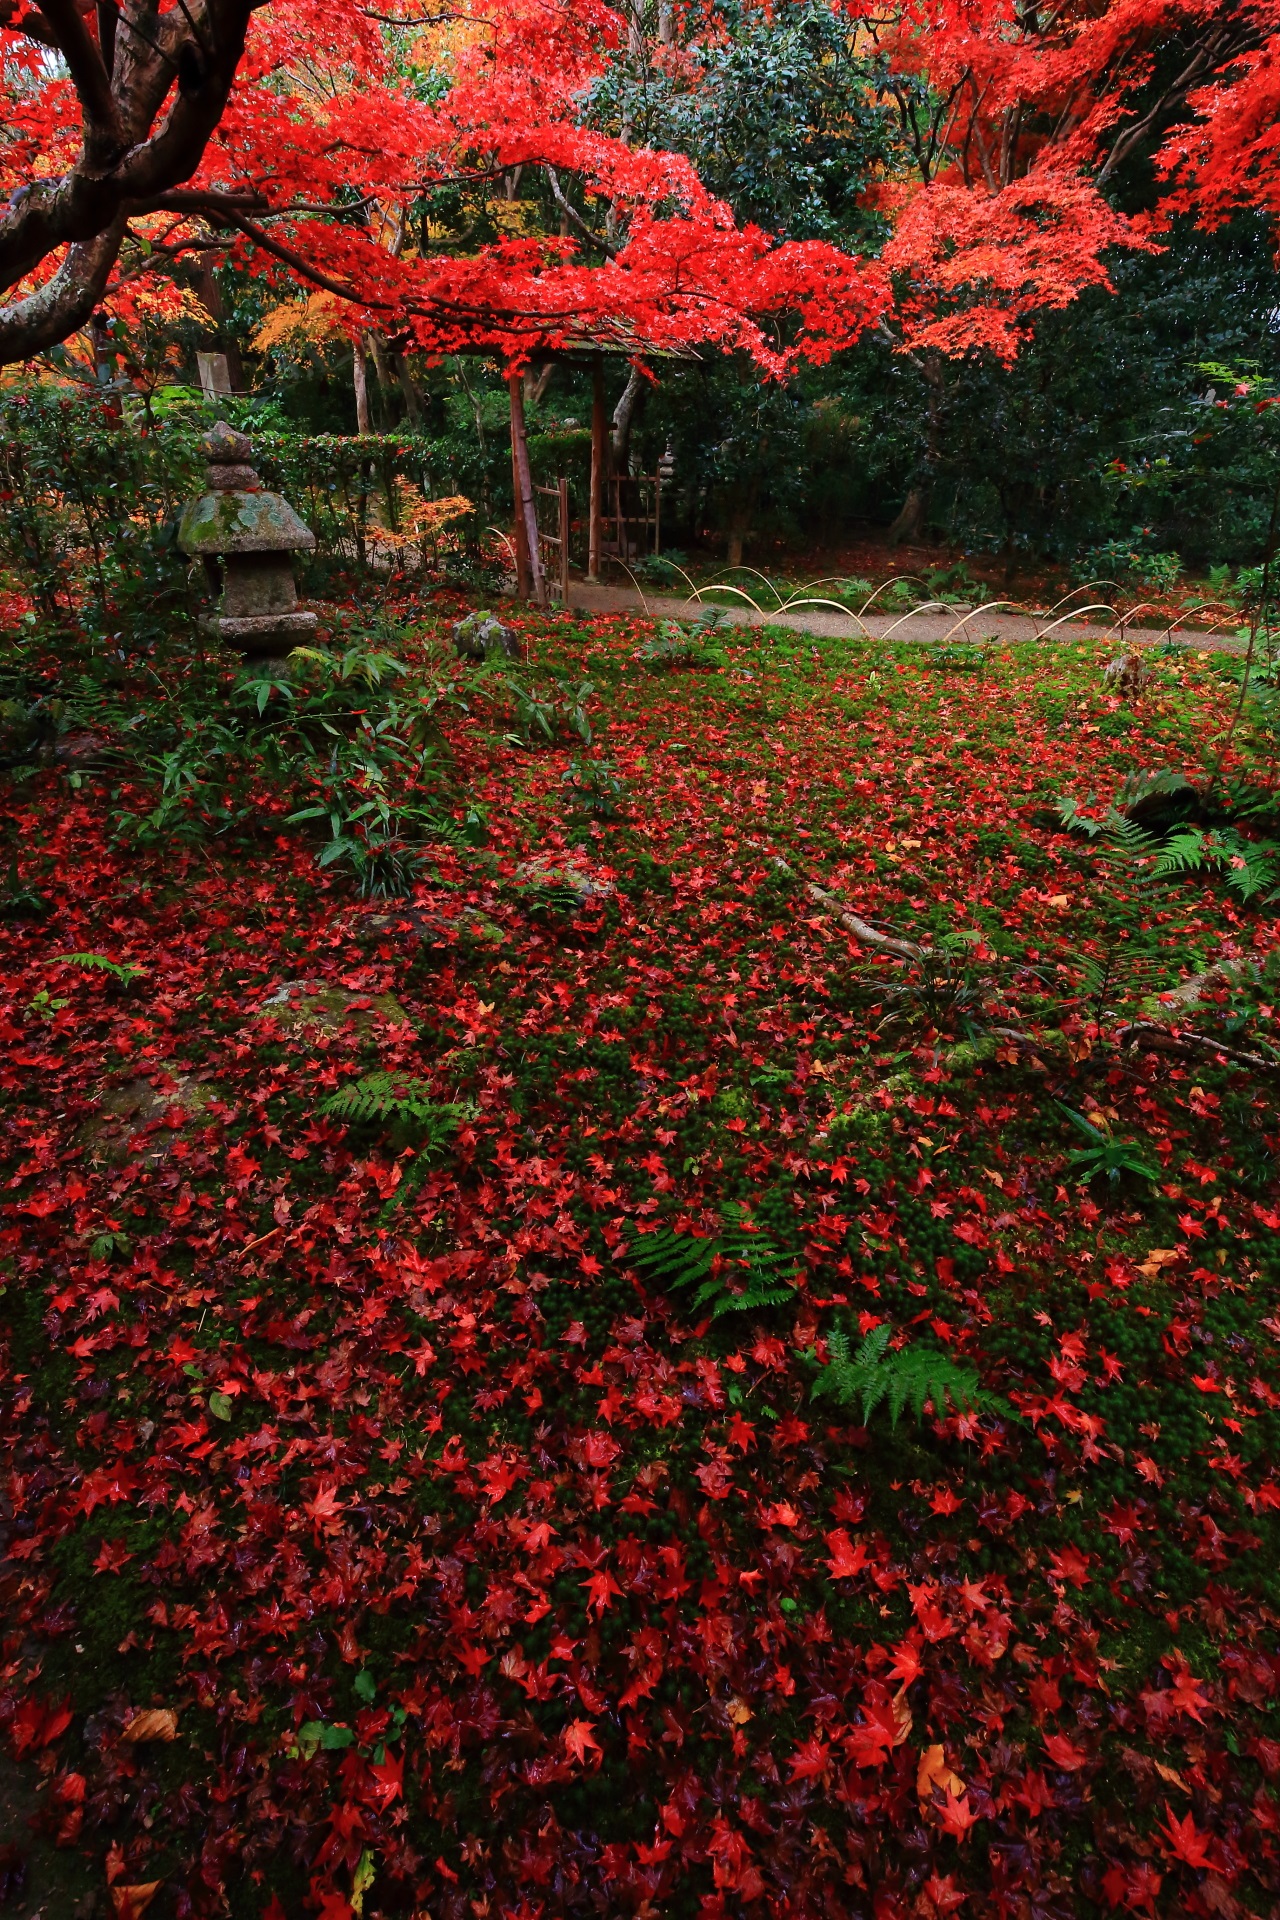 晩秋を真っ赤に彩る紅葉と極上の散りもみじ